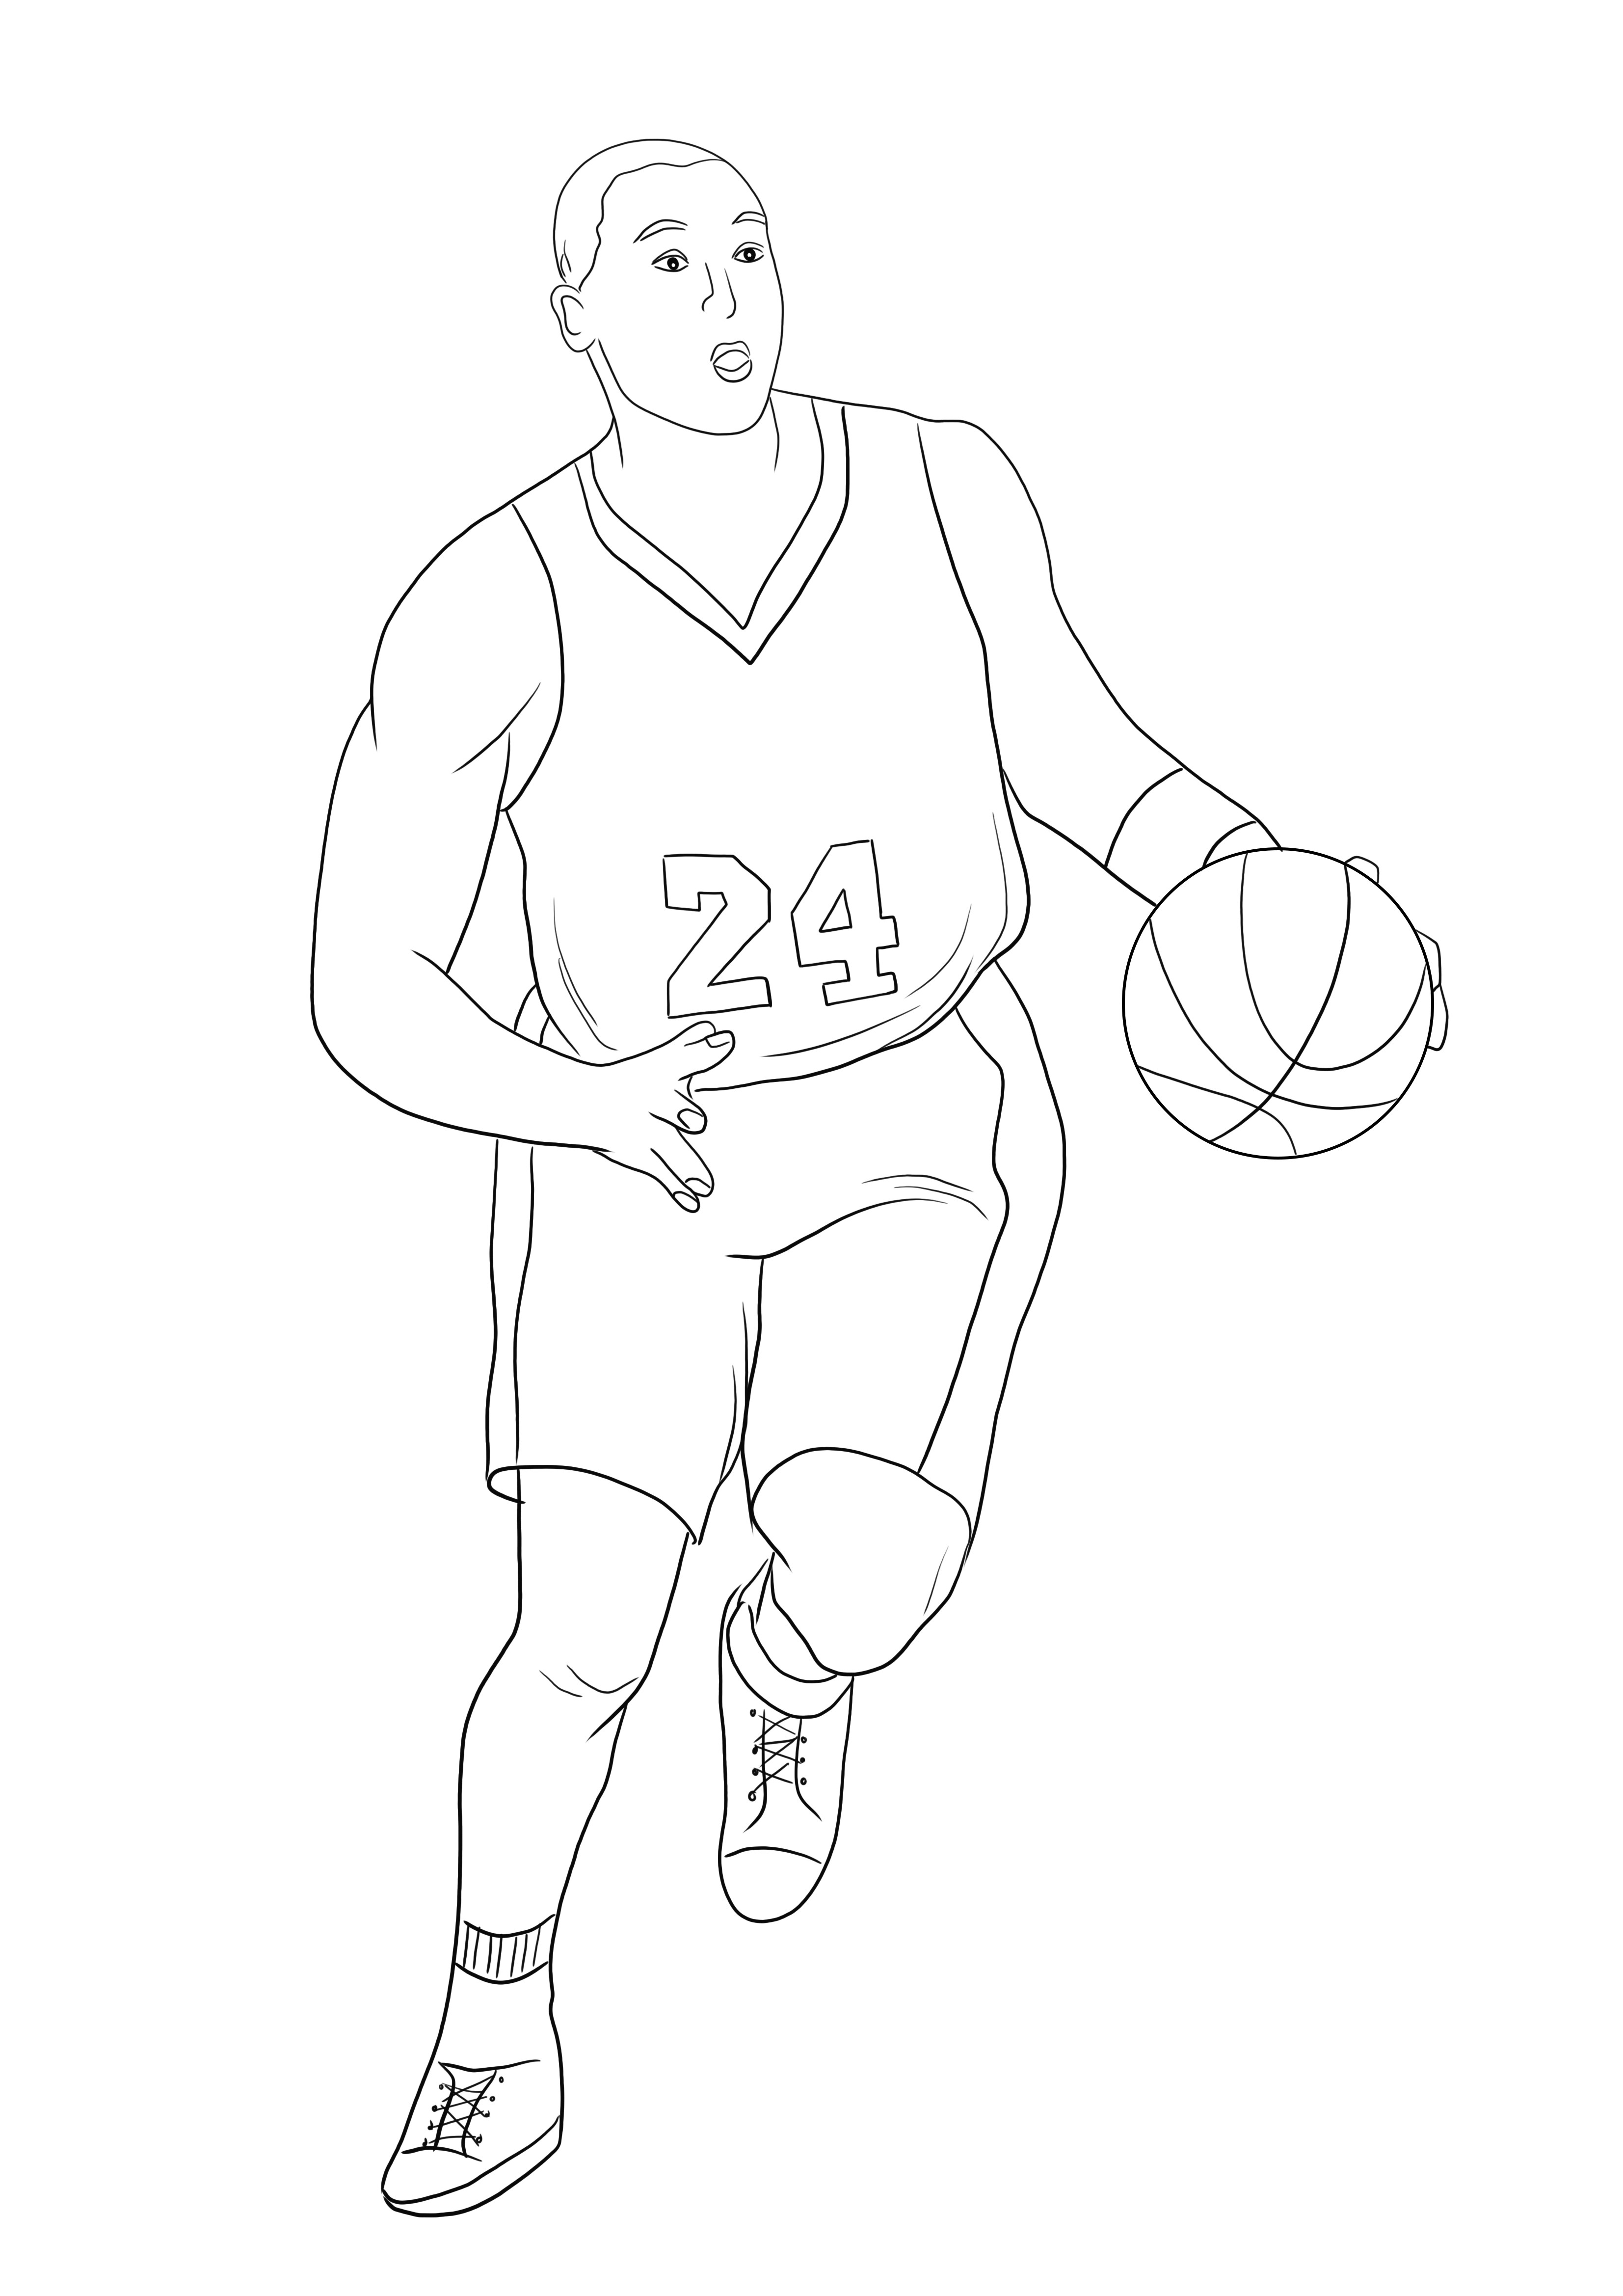 Gratis af te drukken en kleurenafbeelding van Kobe Bryant voor kinderen die van sport houden kleurplaat